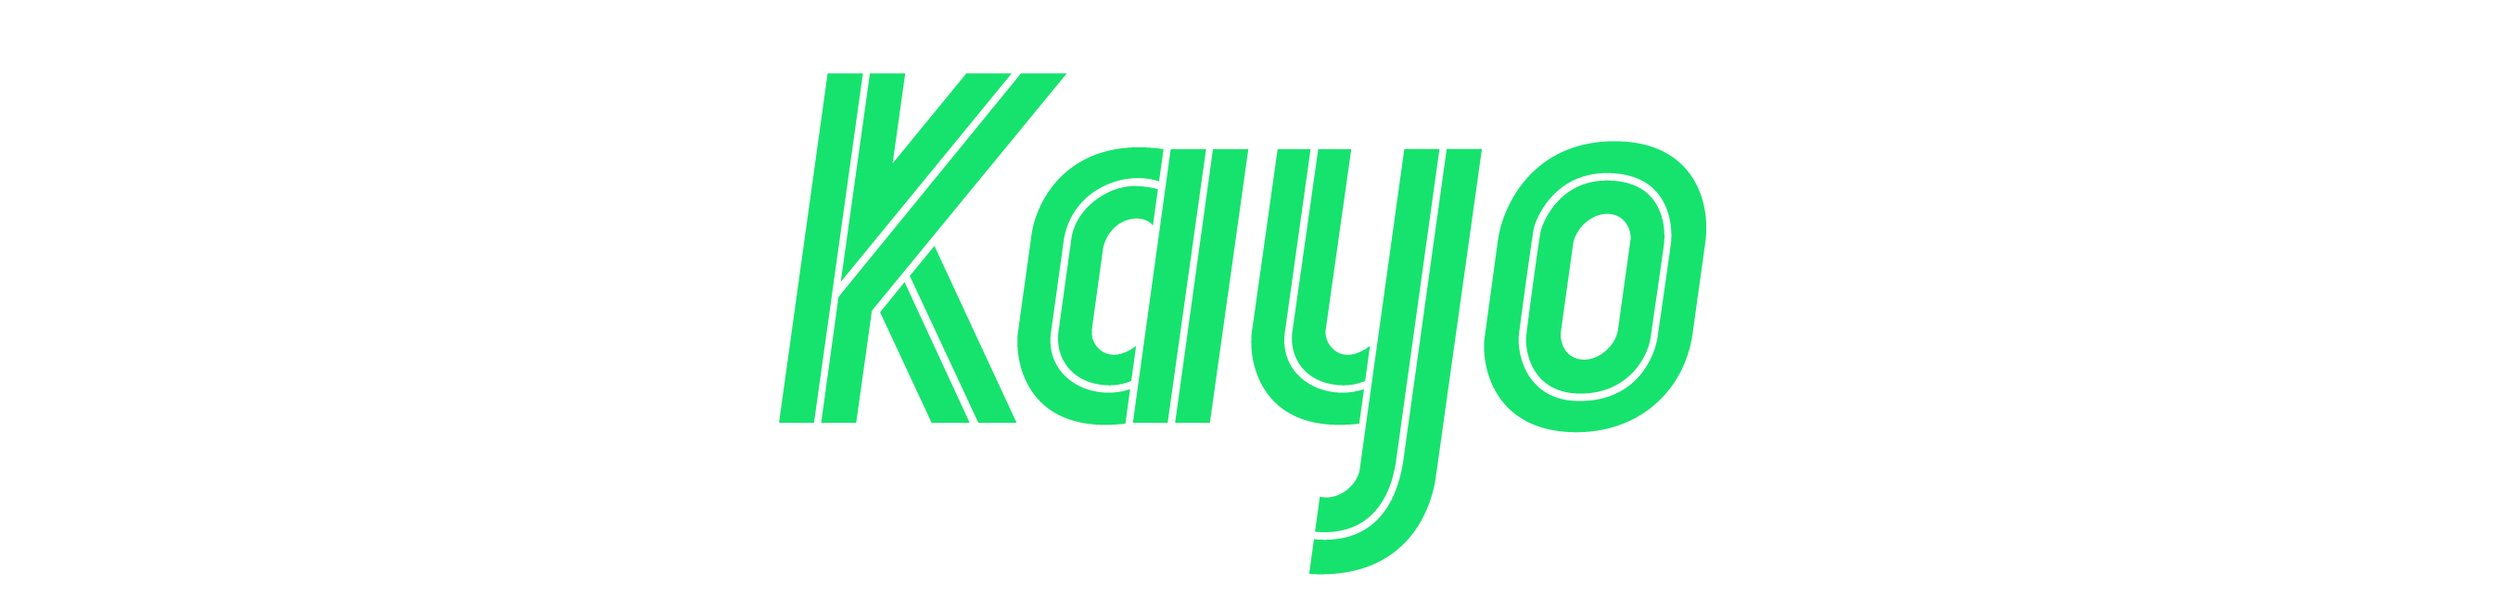 Kayo_Logo_RGB-1.jpg